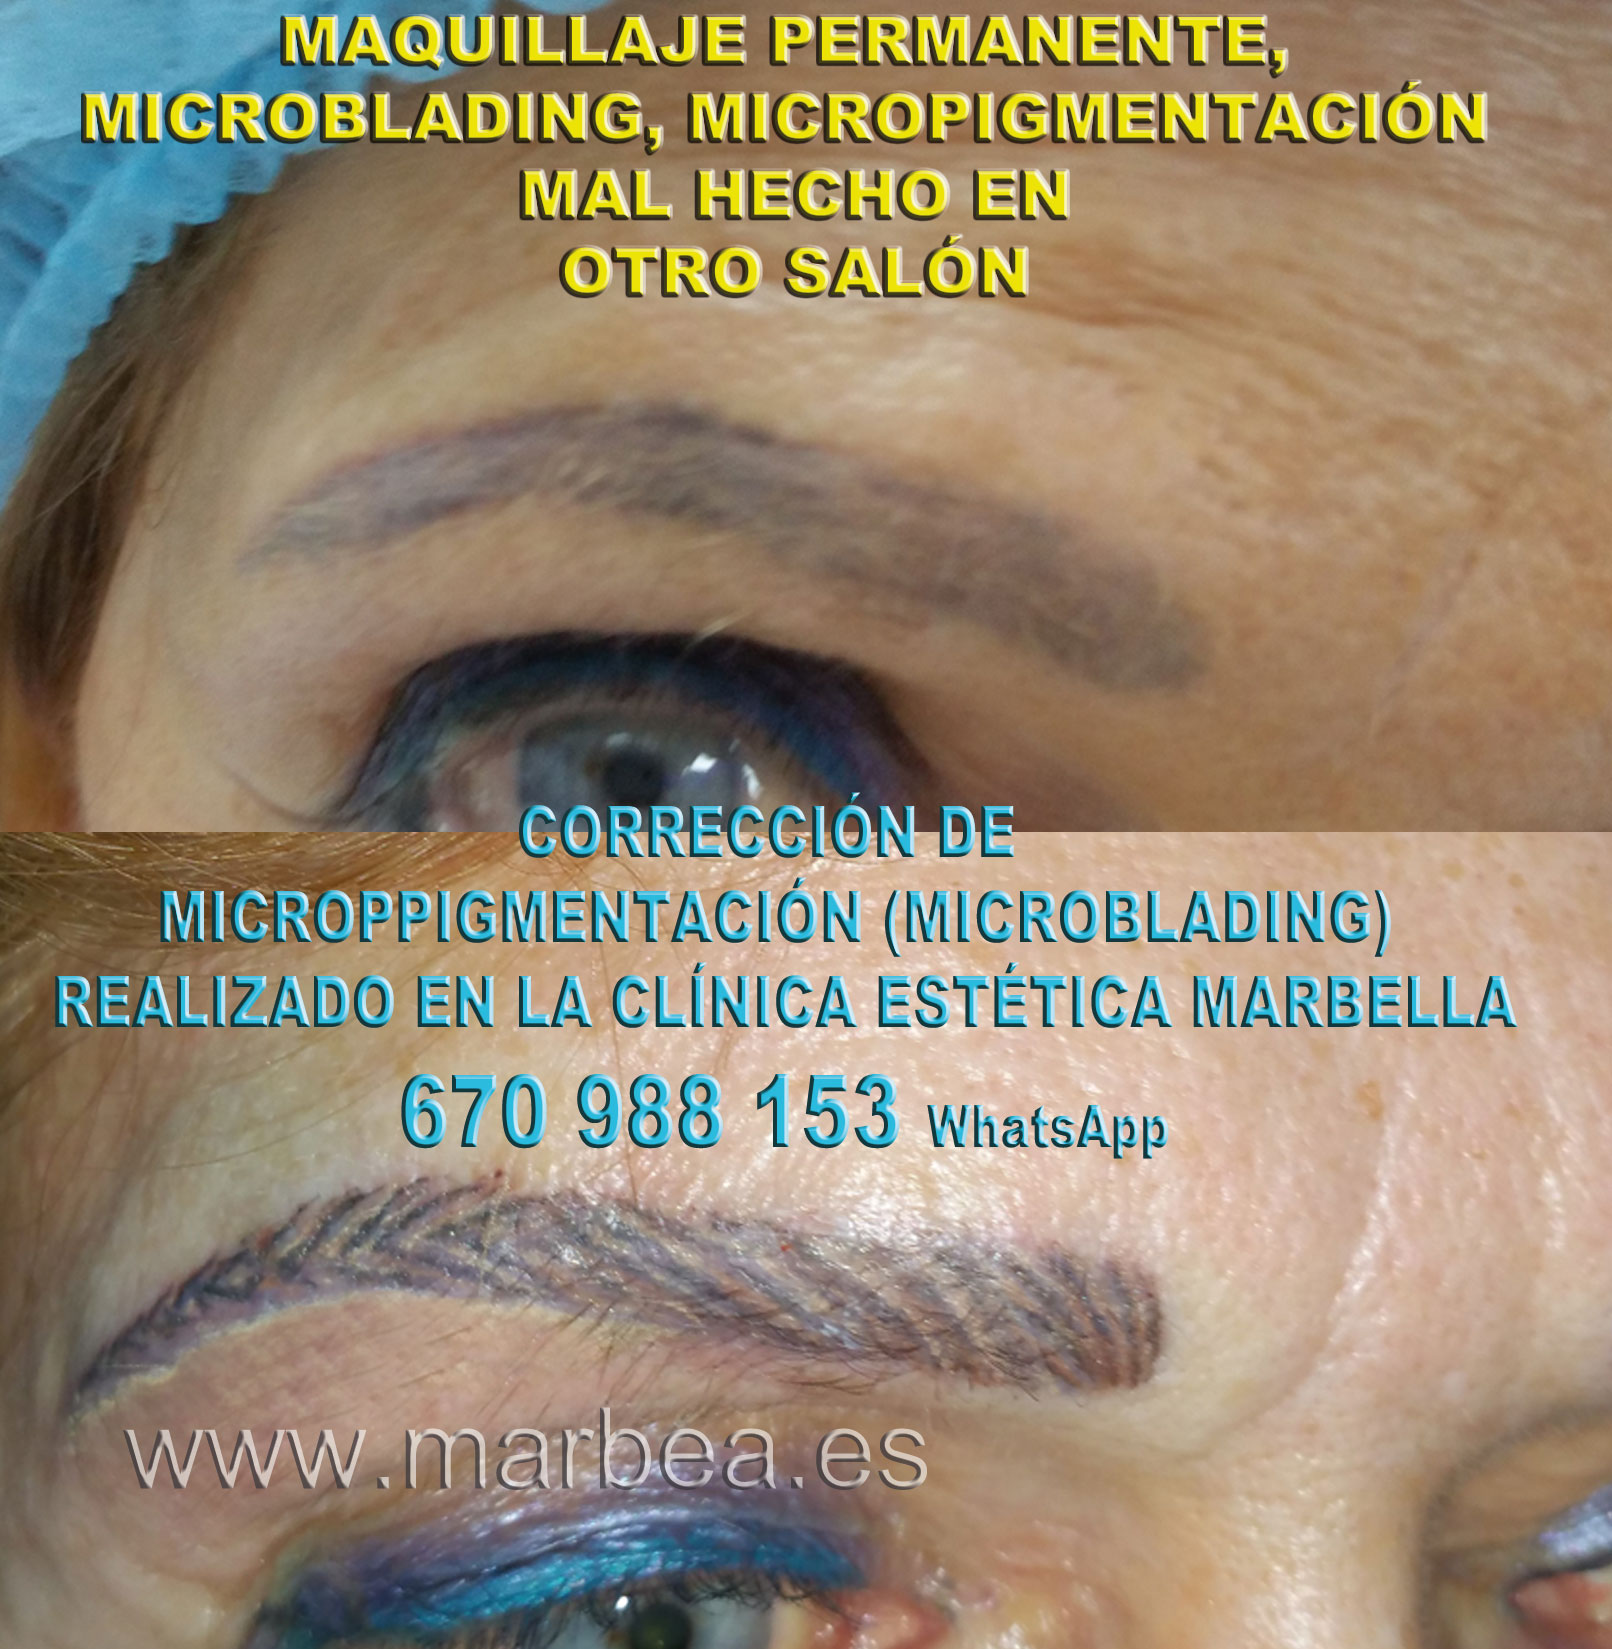 Borrar micropigmentación mal hecha clínica estética micropigmentación propone como aclarar la micropigmentación cejas,corregir micropigmentación no deseada